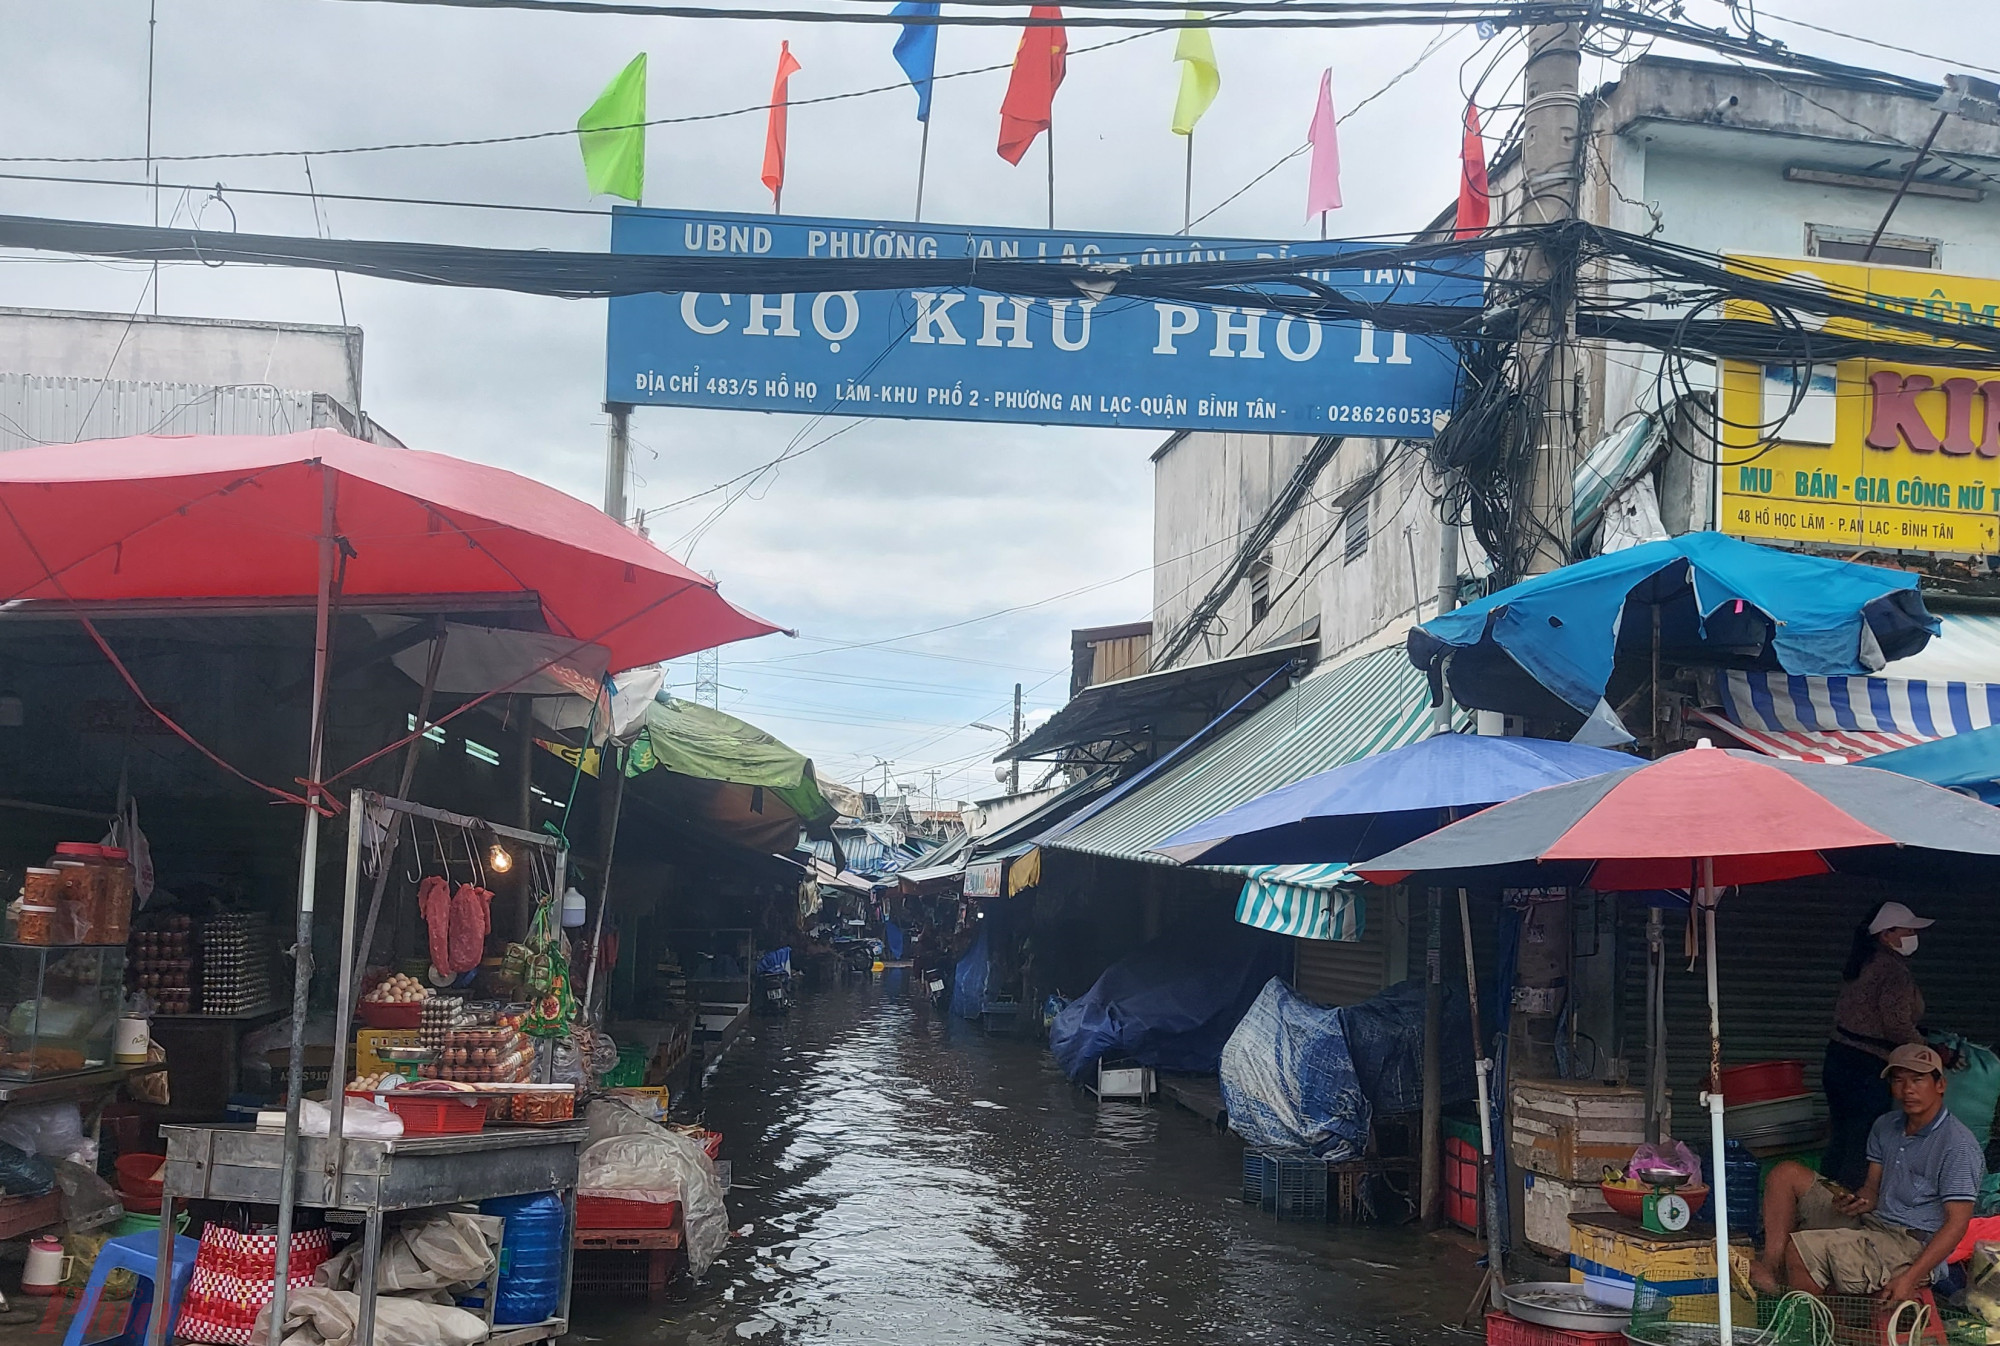 Chợ khu phố 2 nằm thấp hơn mặt đường Hồ Học Lãm nên chỉ gần một trận mưa là khu chợ này biến thành “chợ nổi”.